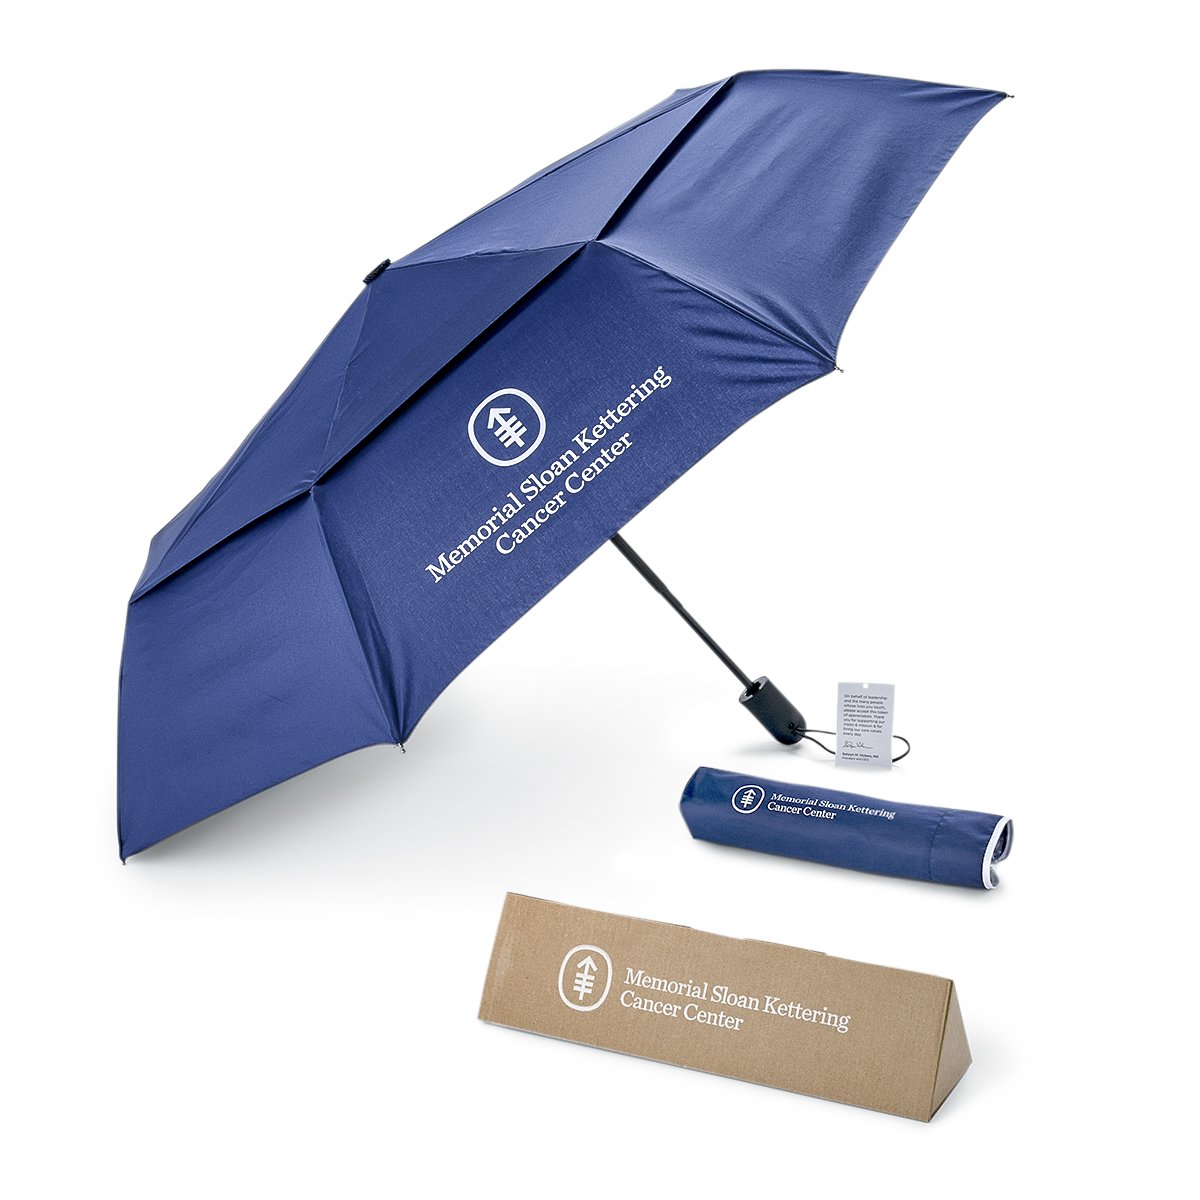 Memorial Sloan Kettering Umbrella-2.jpg